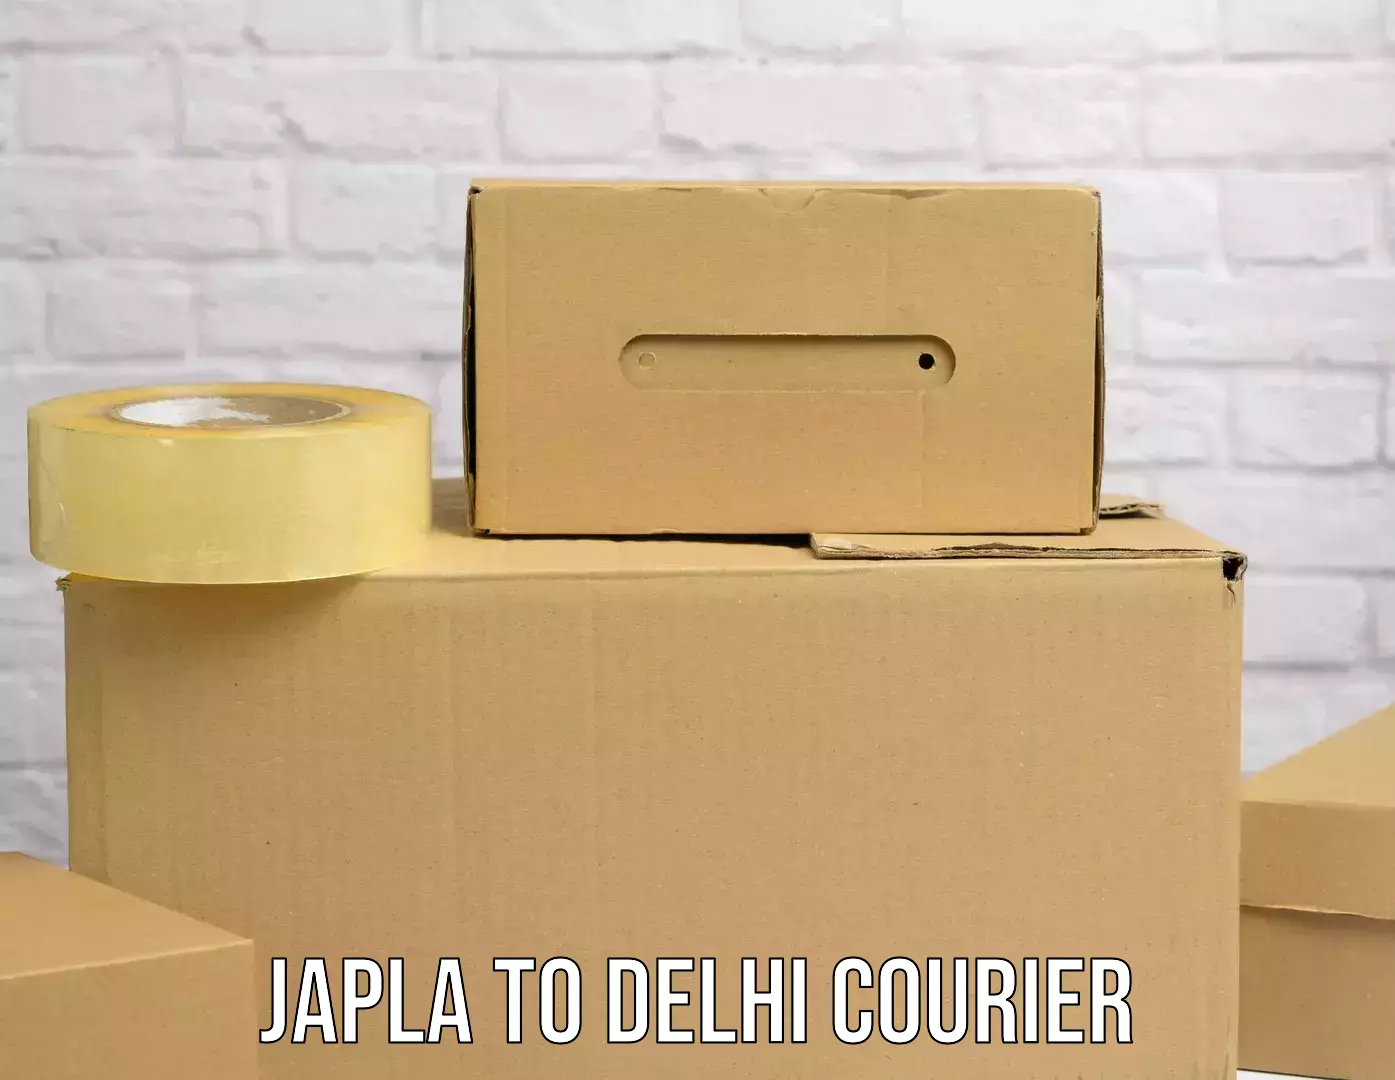 High-efficiency logistics Japla to Delhi